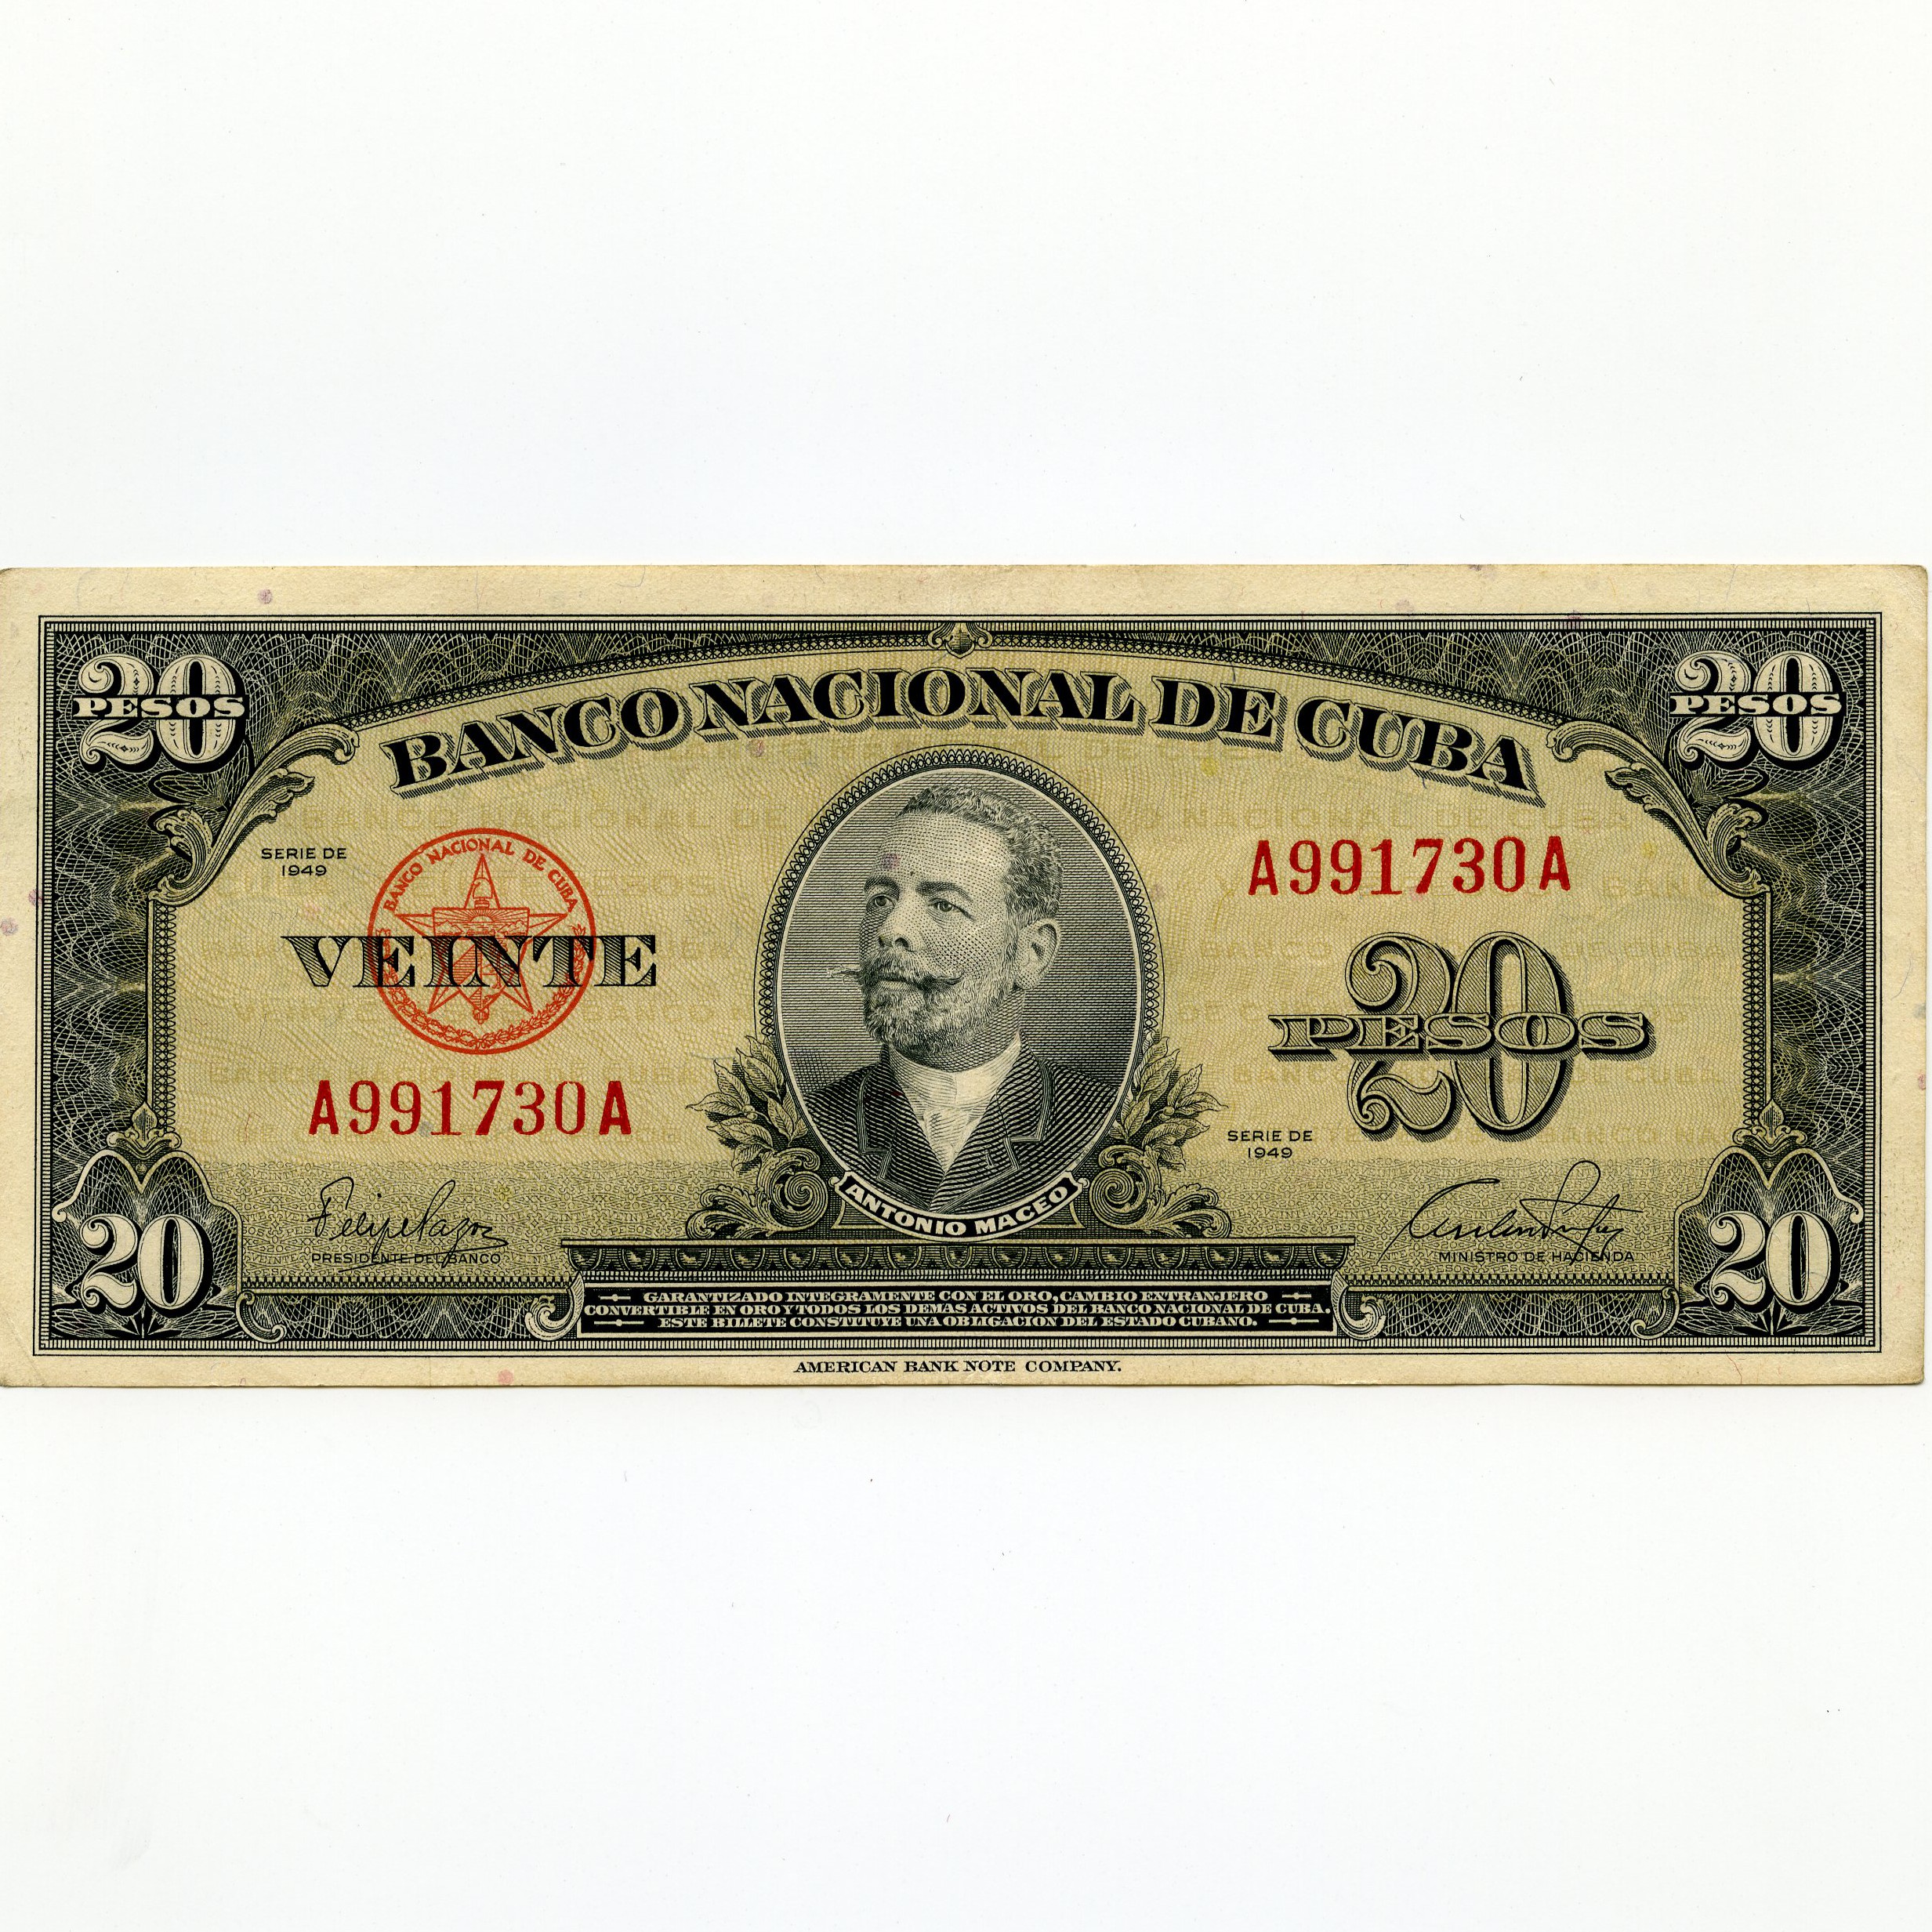 Cuba - 20 Pesos - A991730A avers